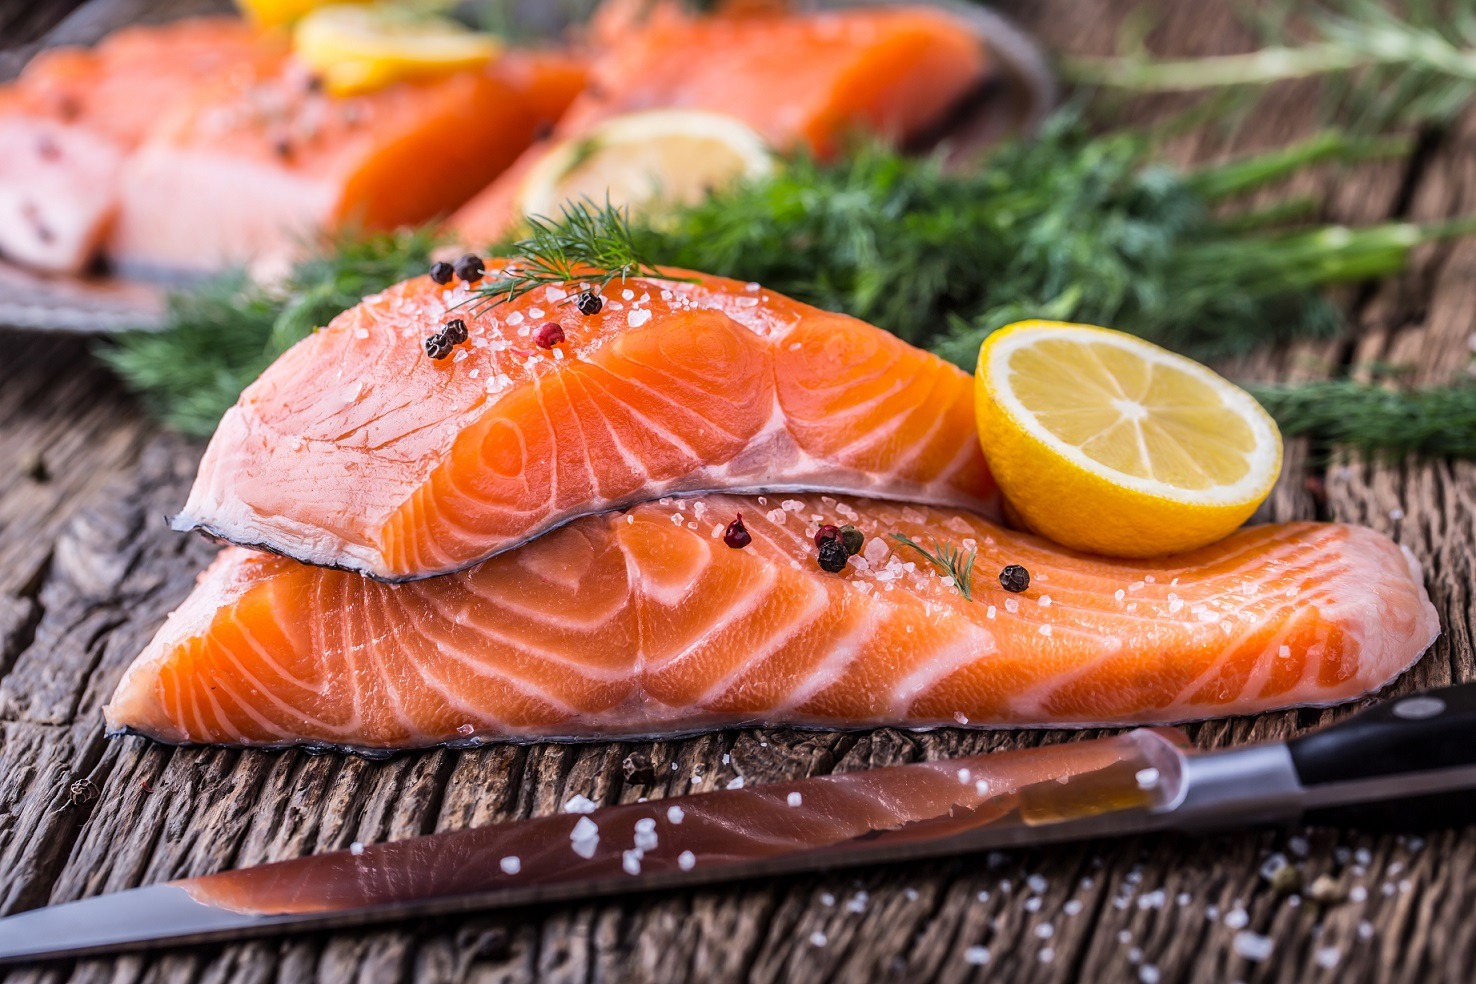 Hrănește-te corect! Pește toxic versus pește sănătos